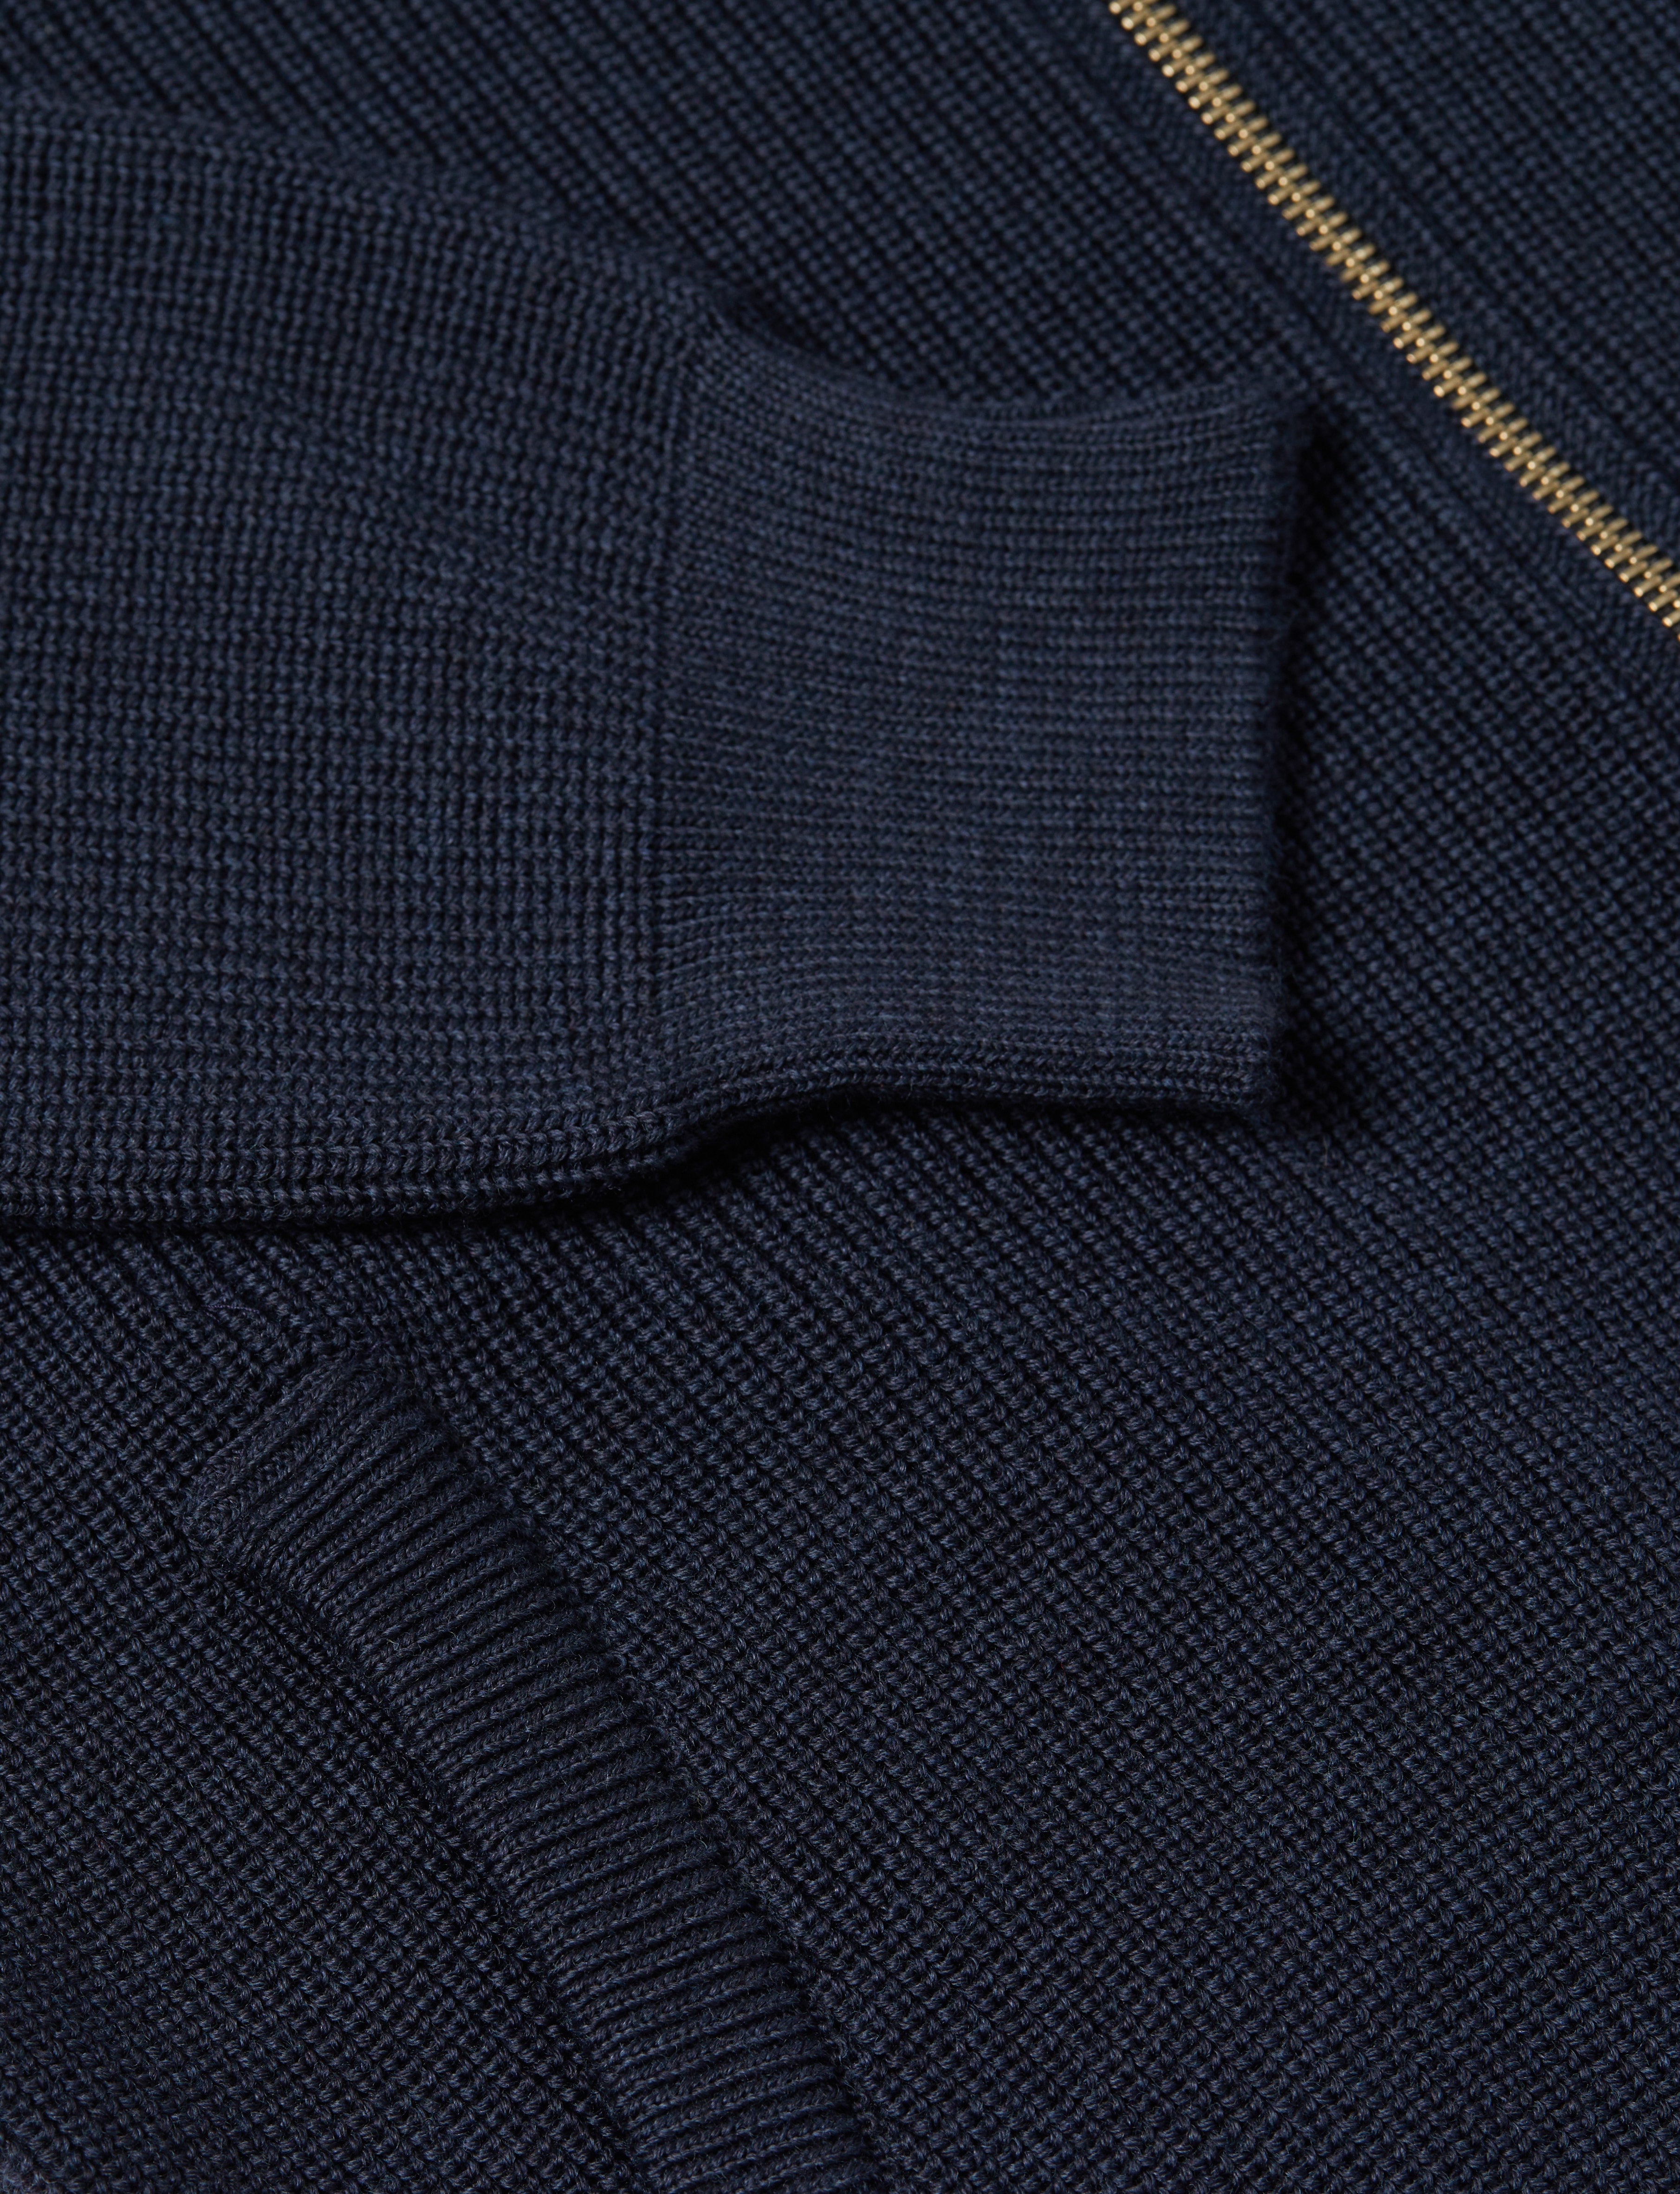 Navy Full Zip Cardigan Knit